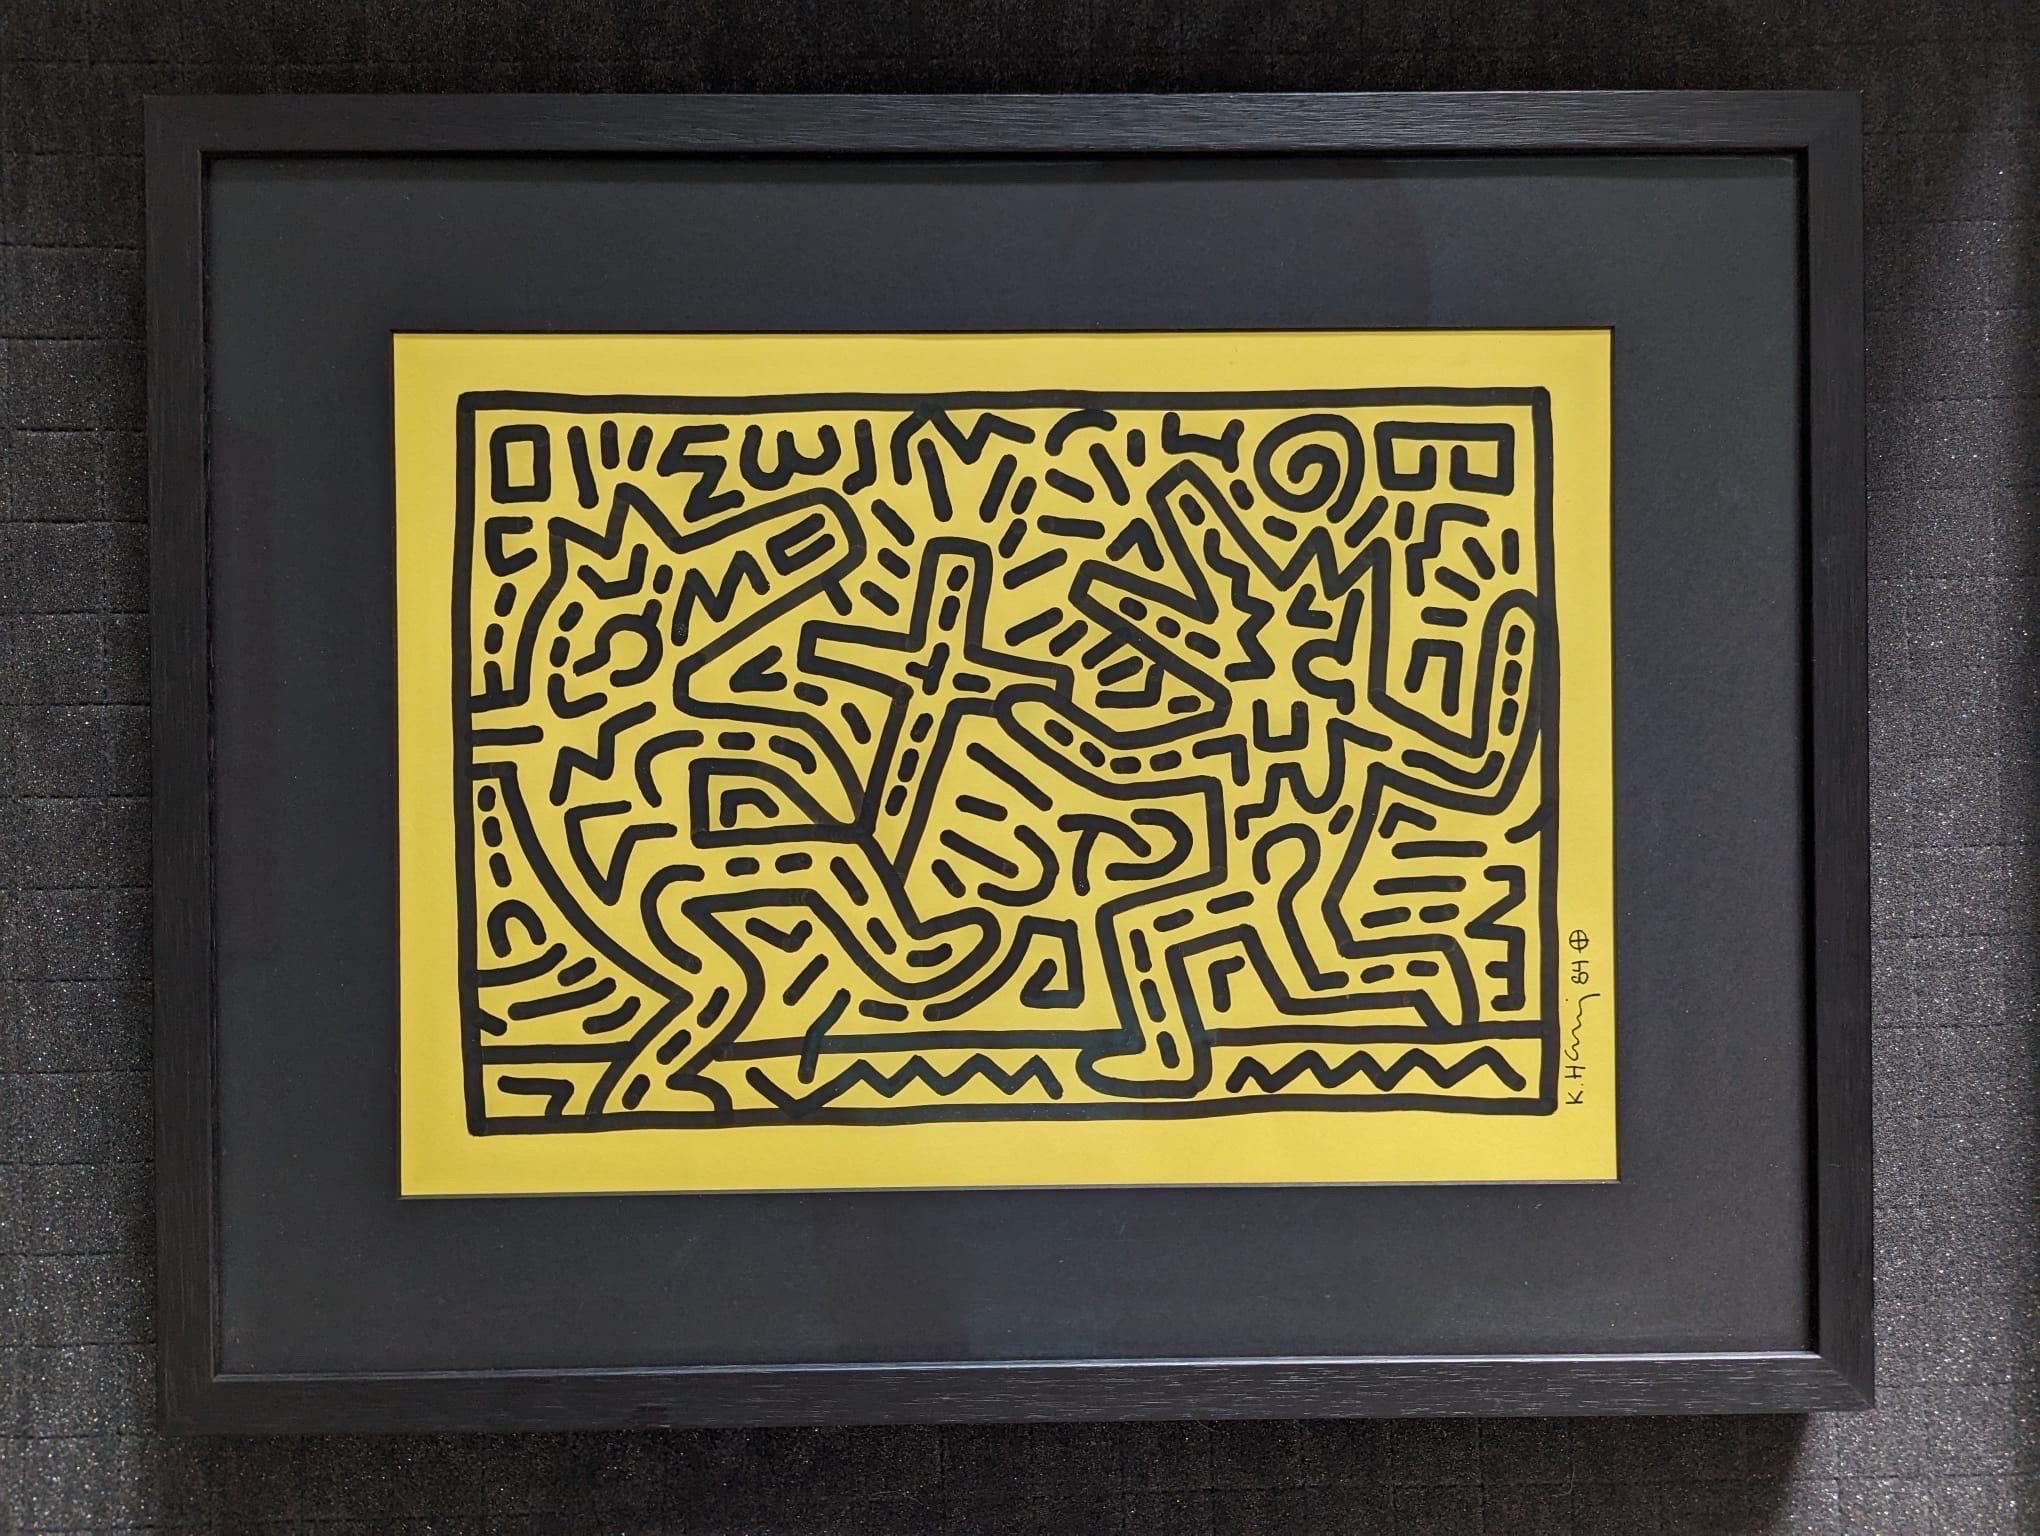 Keith Haring, Sans titre, 1984

Encre sur papier vélin jaune

Signé et daté à l'encre dans la partie inférieure de la marge droite : K.K.

11.75 x 16.5 in (30 x 42 cm)

Certificat d'authenticité au verso signé par l'exécuteur testamentaire, Julia